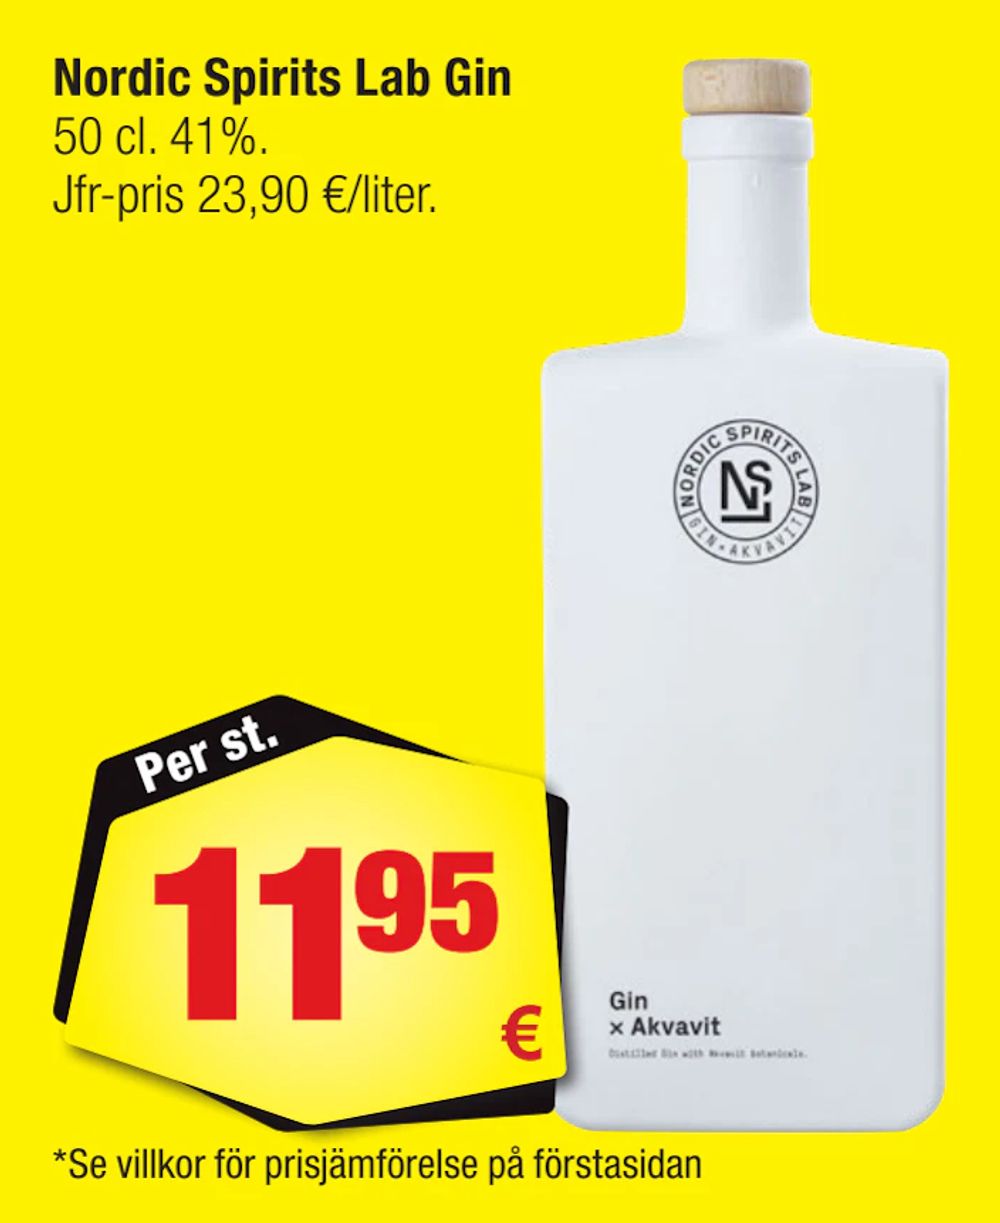 Erbjudanden på Nordic Spirits Lab Gin från Calle för 11,95 €